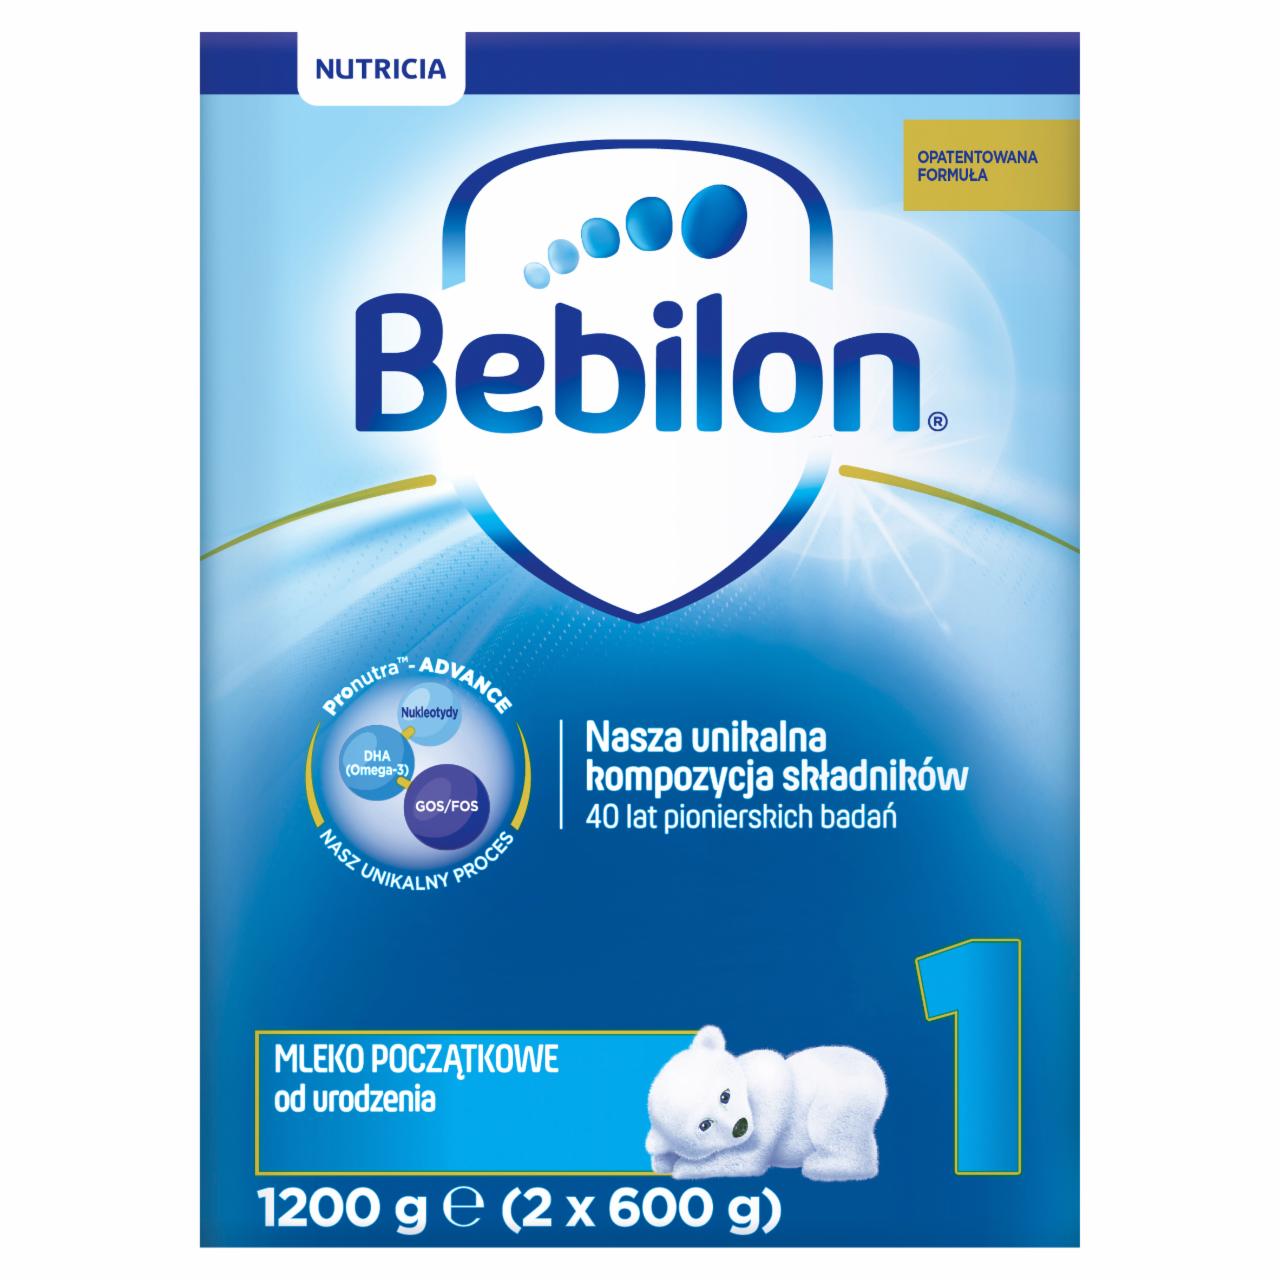 Zdjęcia - Bebilon 1 Pronutra-Advance Mleko początkowe od urodzenia 1200 g (2 x 600 g)